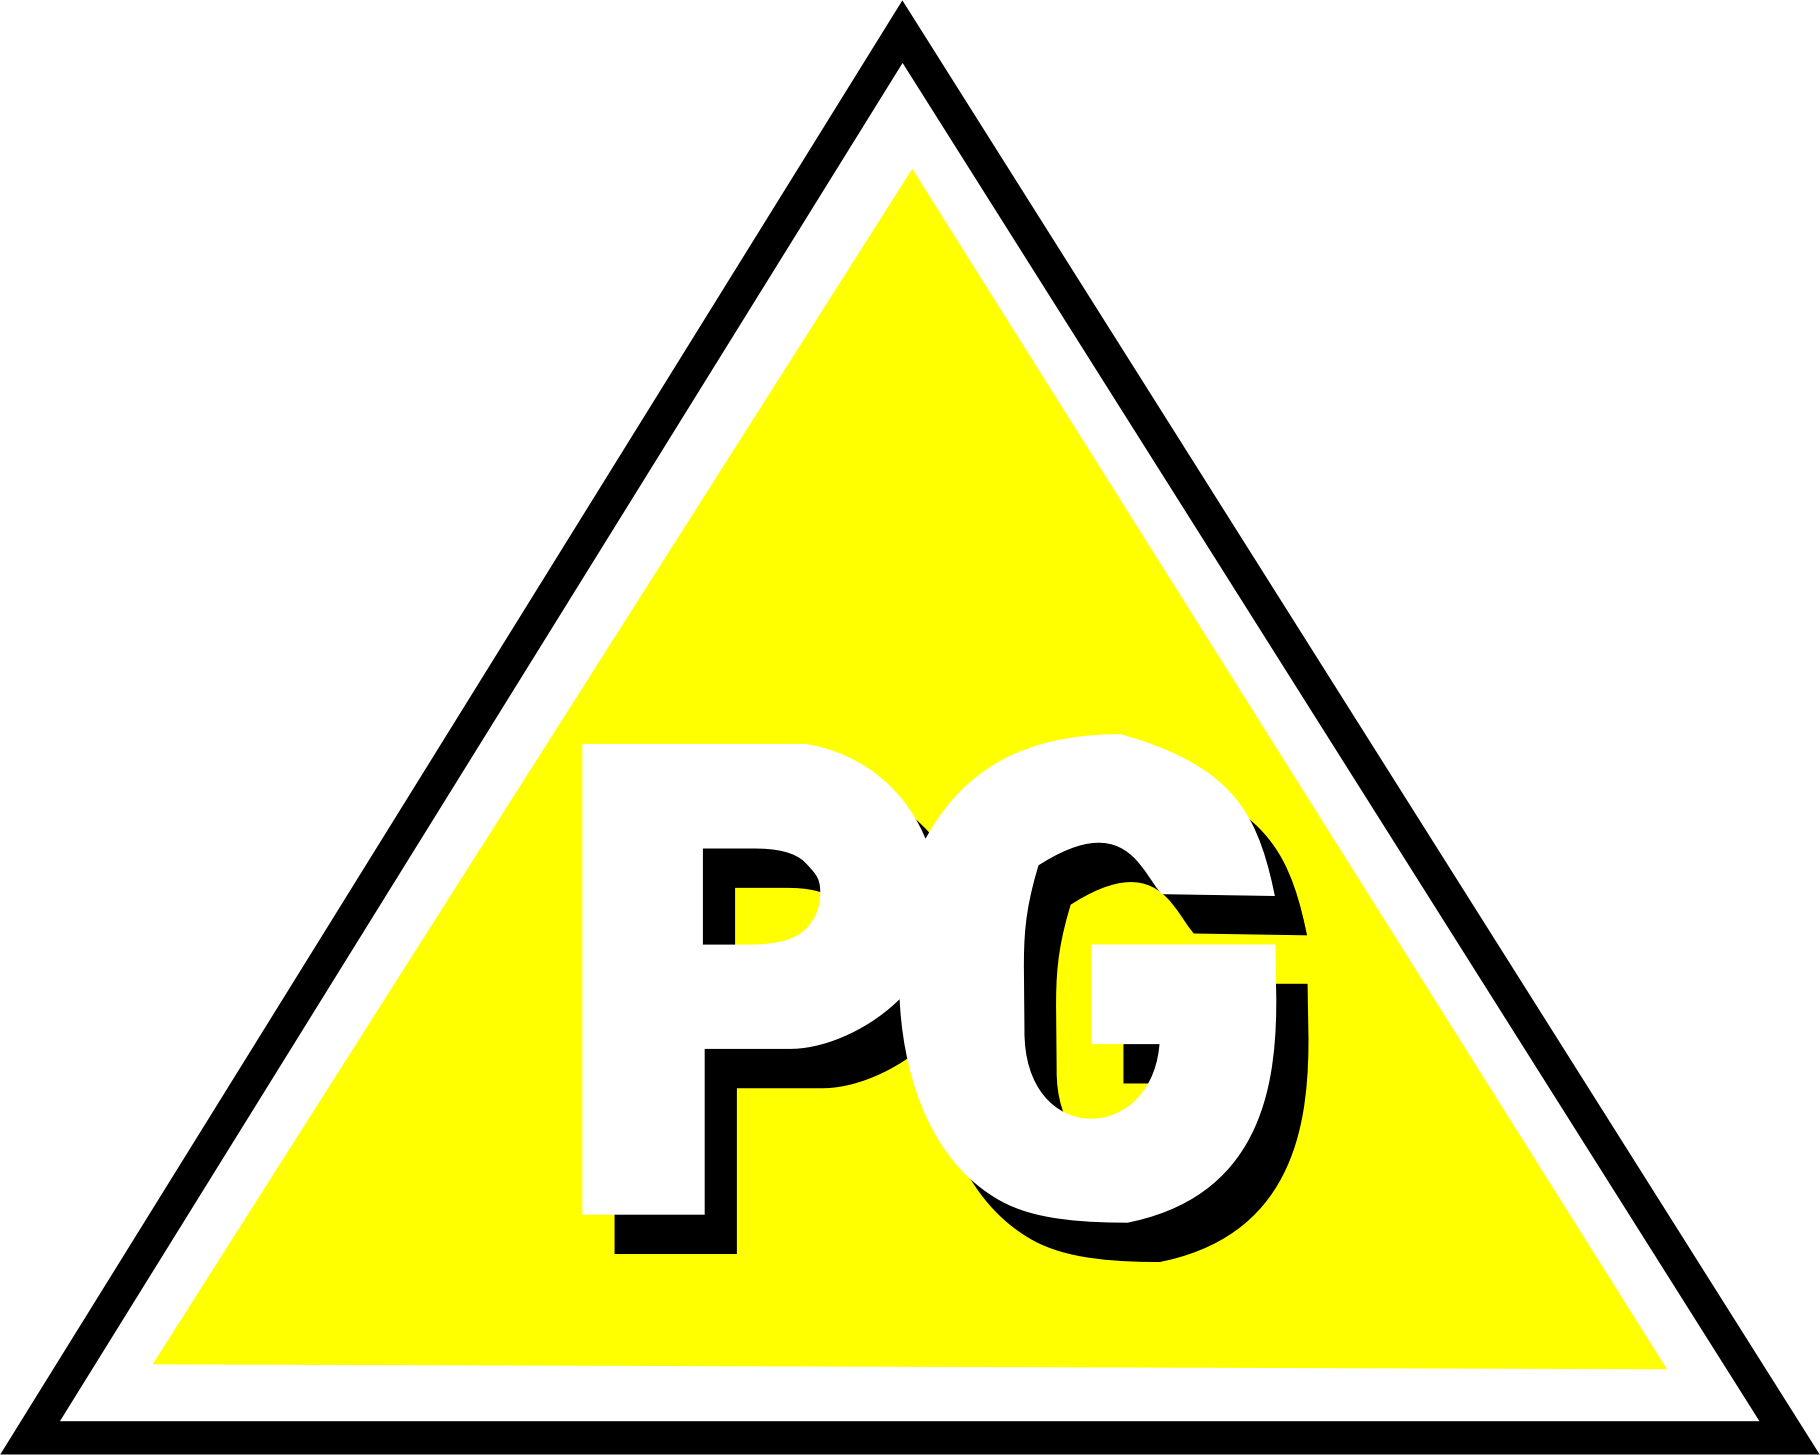  Pg Logos